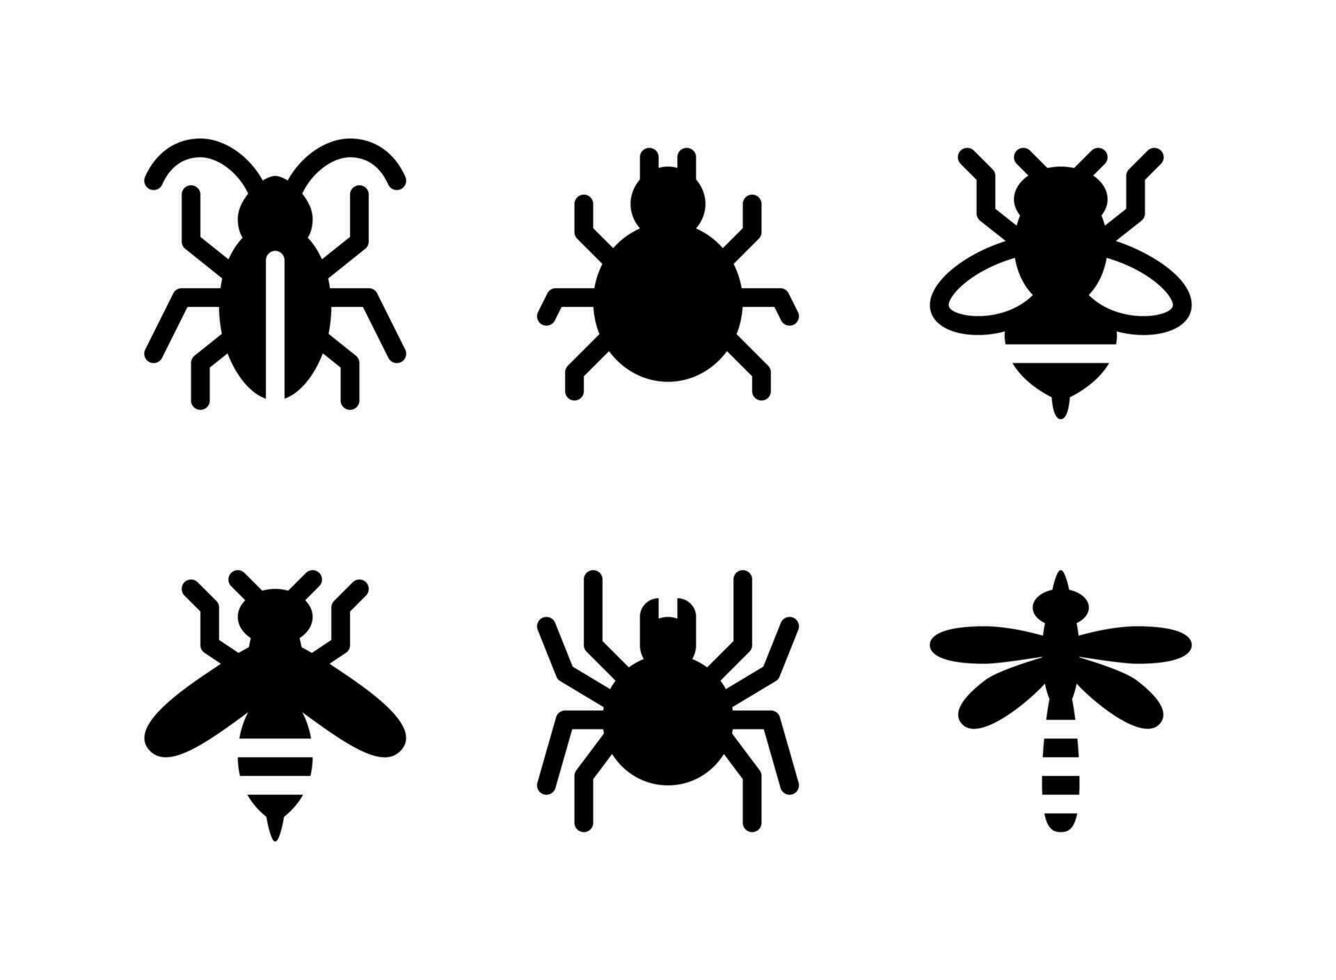 semplice set di icone solide vettoriali relative al controllo dei parassiti. contiene icone come scarafaggio, acaro, ape, vespa e altro ancora.